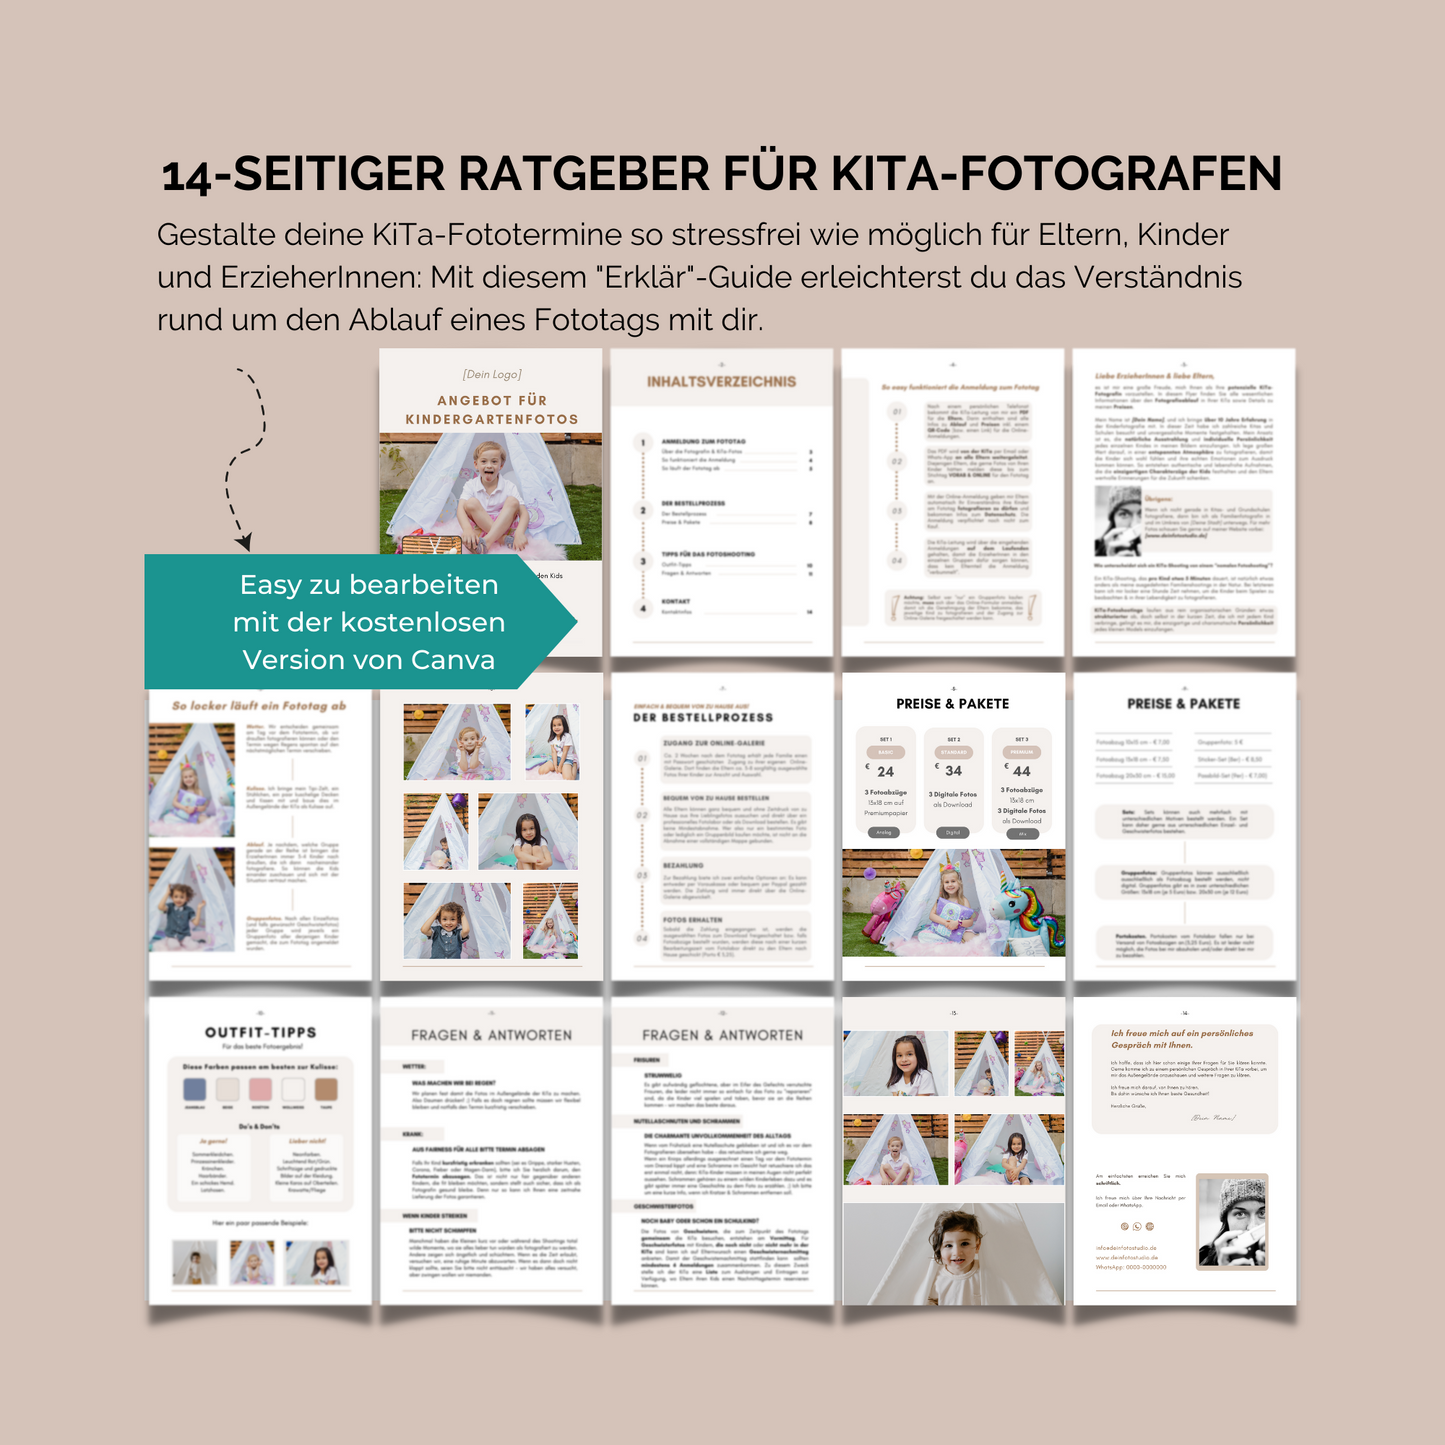 14-seitiger Ratgeber für KiTa-Fotografen inkl. Q&A und Oufit-Tipps.